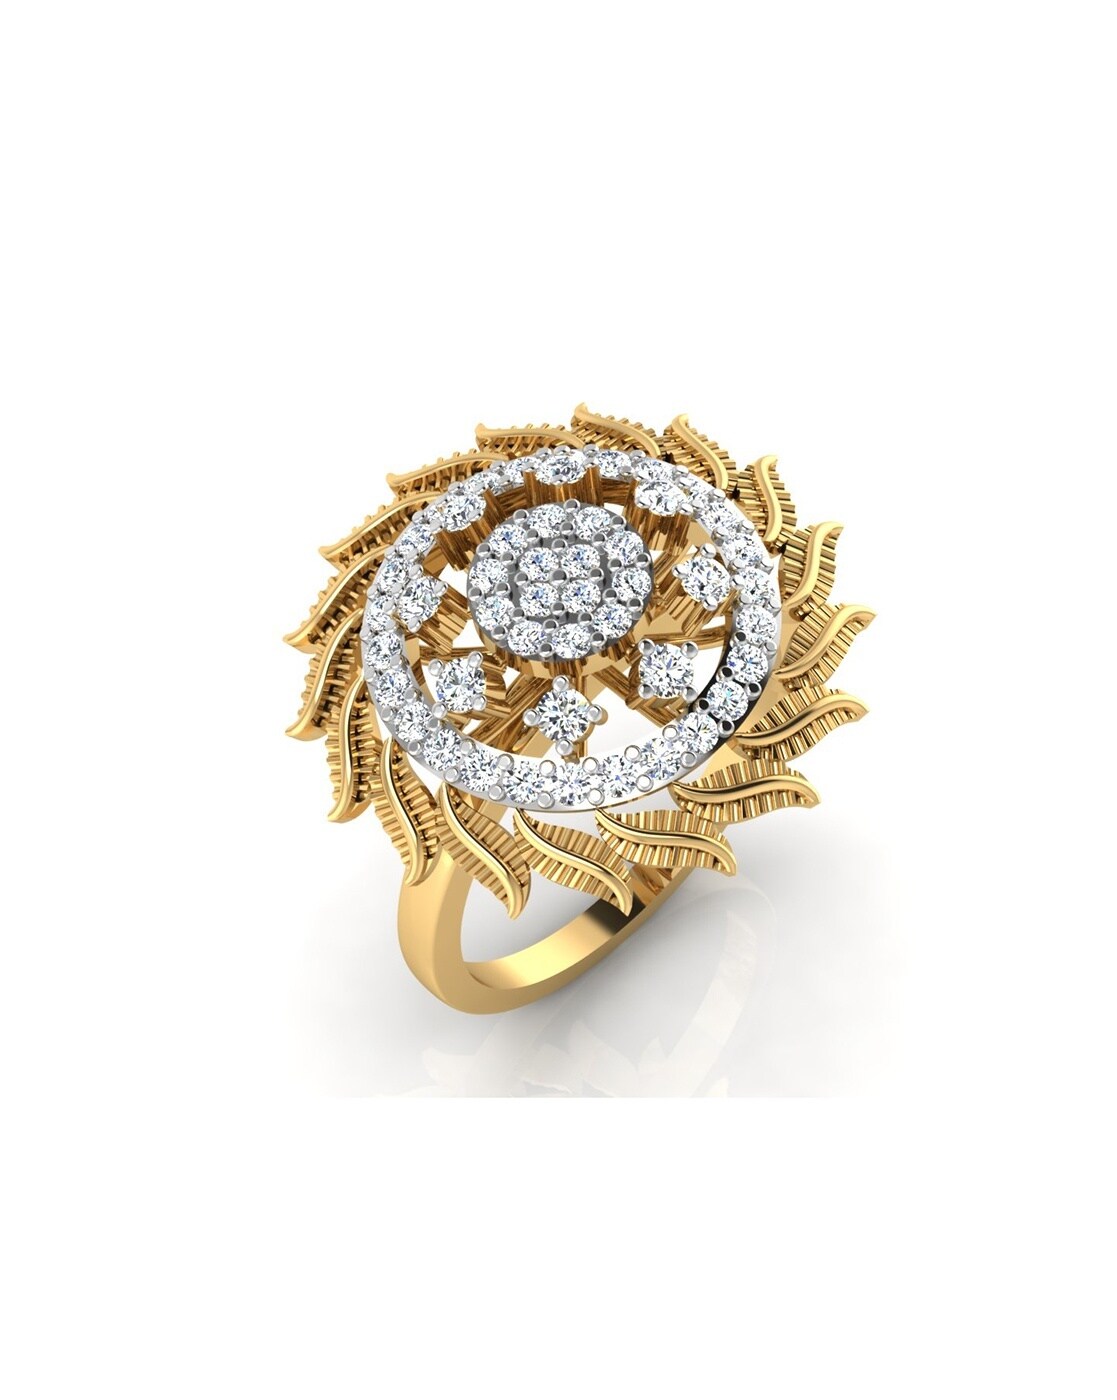 Buy Mesmerizing 22 Karat Yellow Gold Floral Cocktail Ring at Best Price |  Tanishq UAE